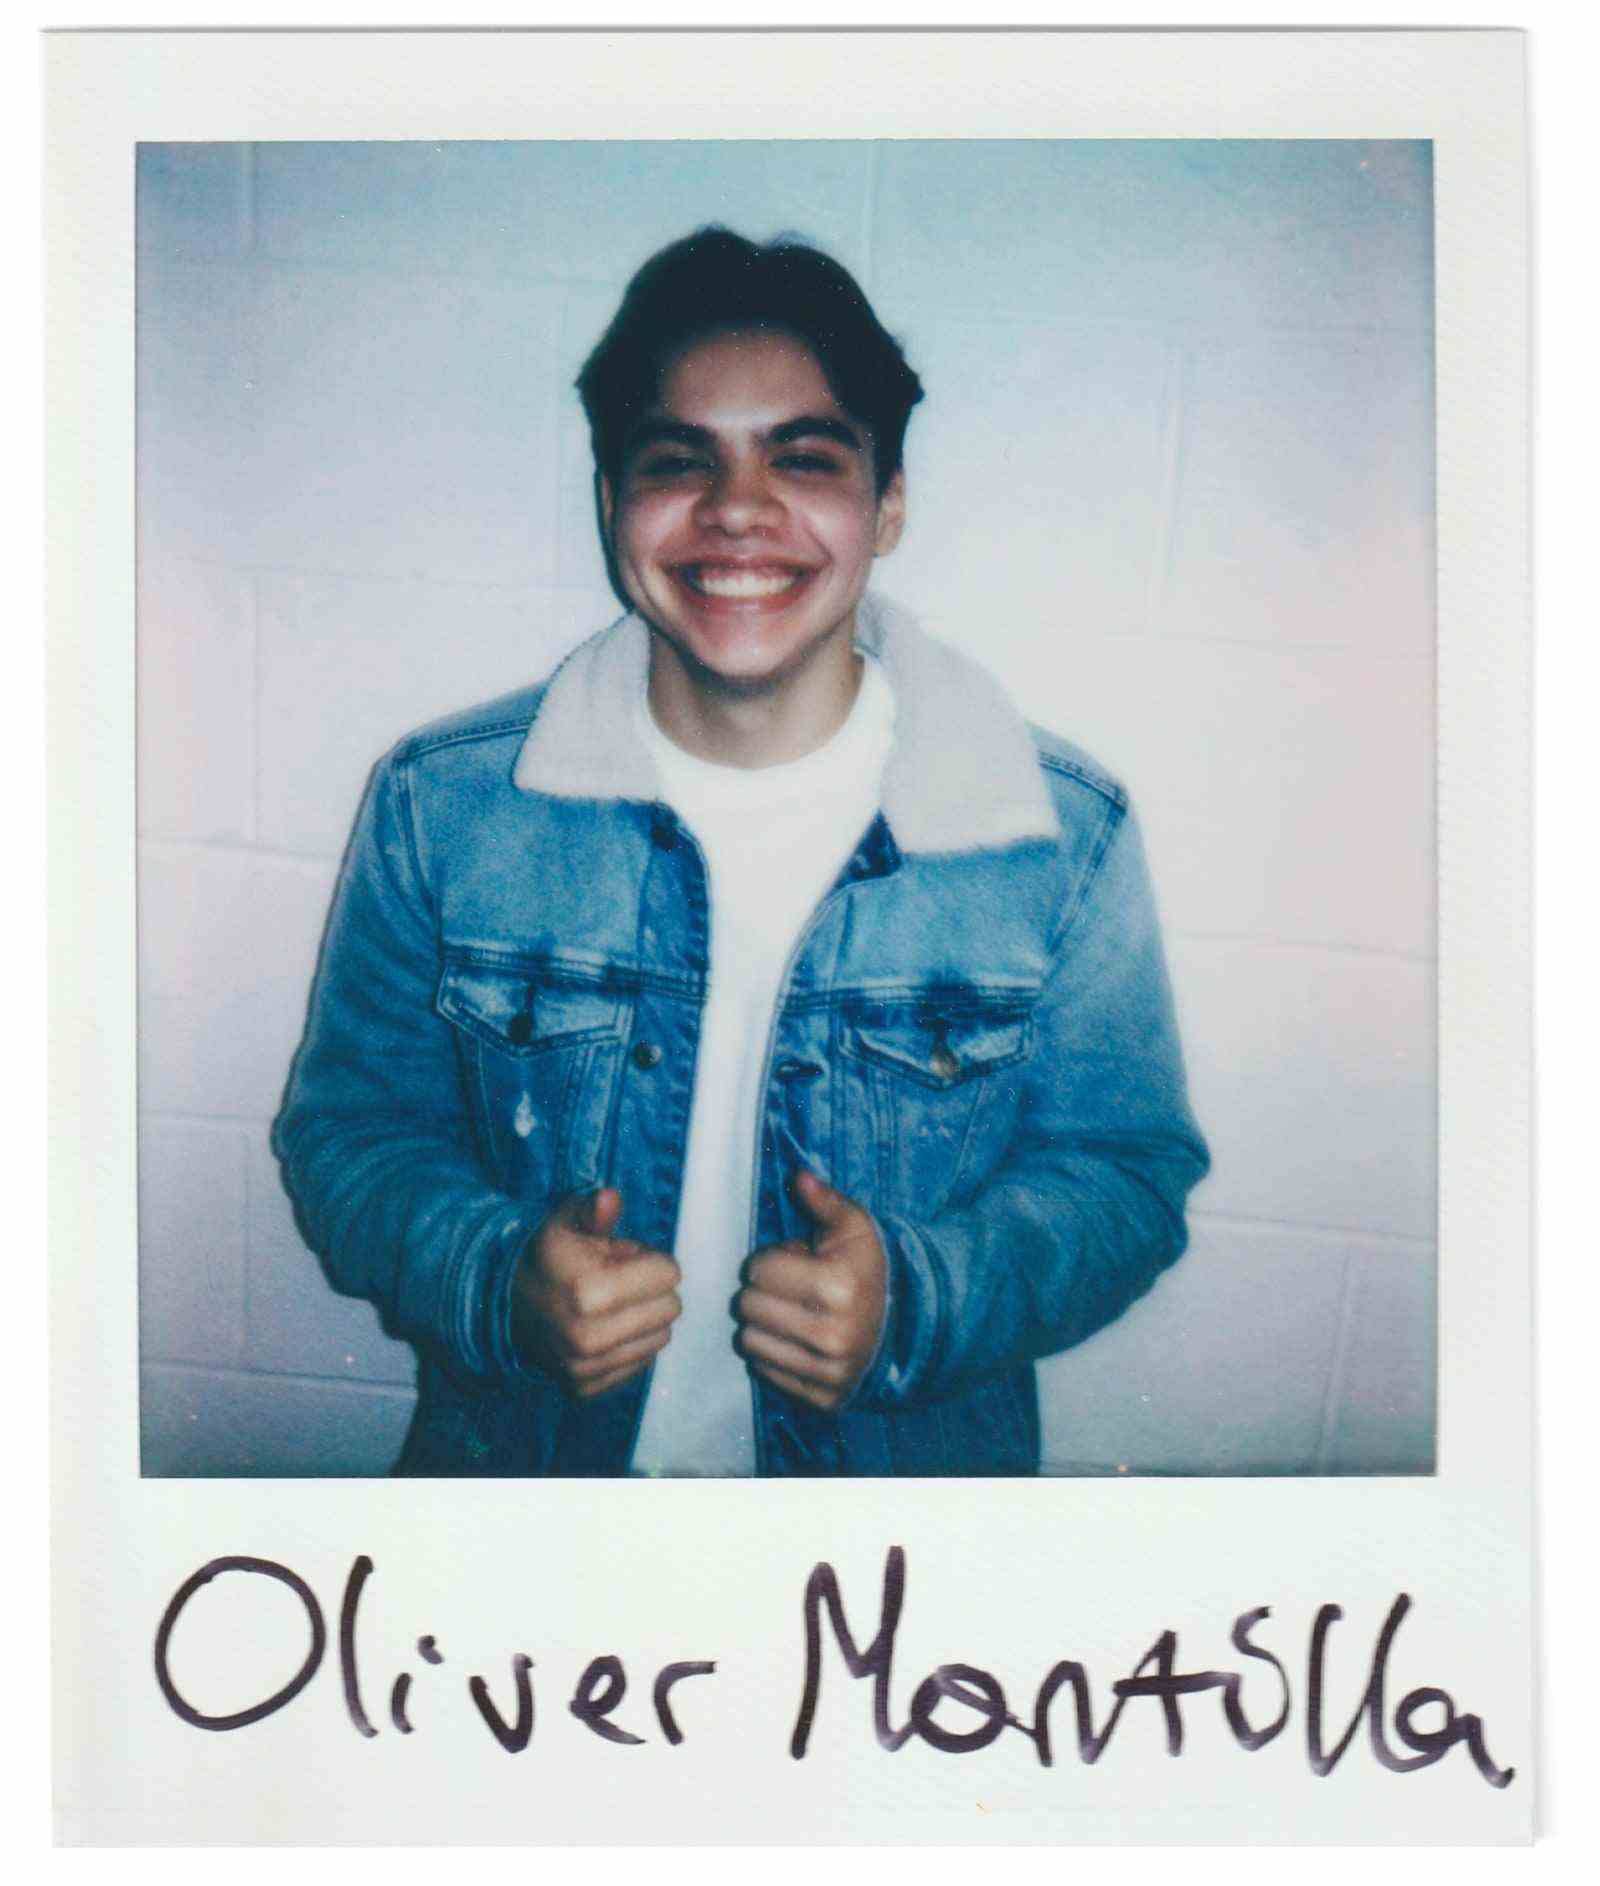 Polaroid-Portrait von Oliver Montolla von der Dunellen High School